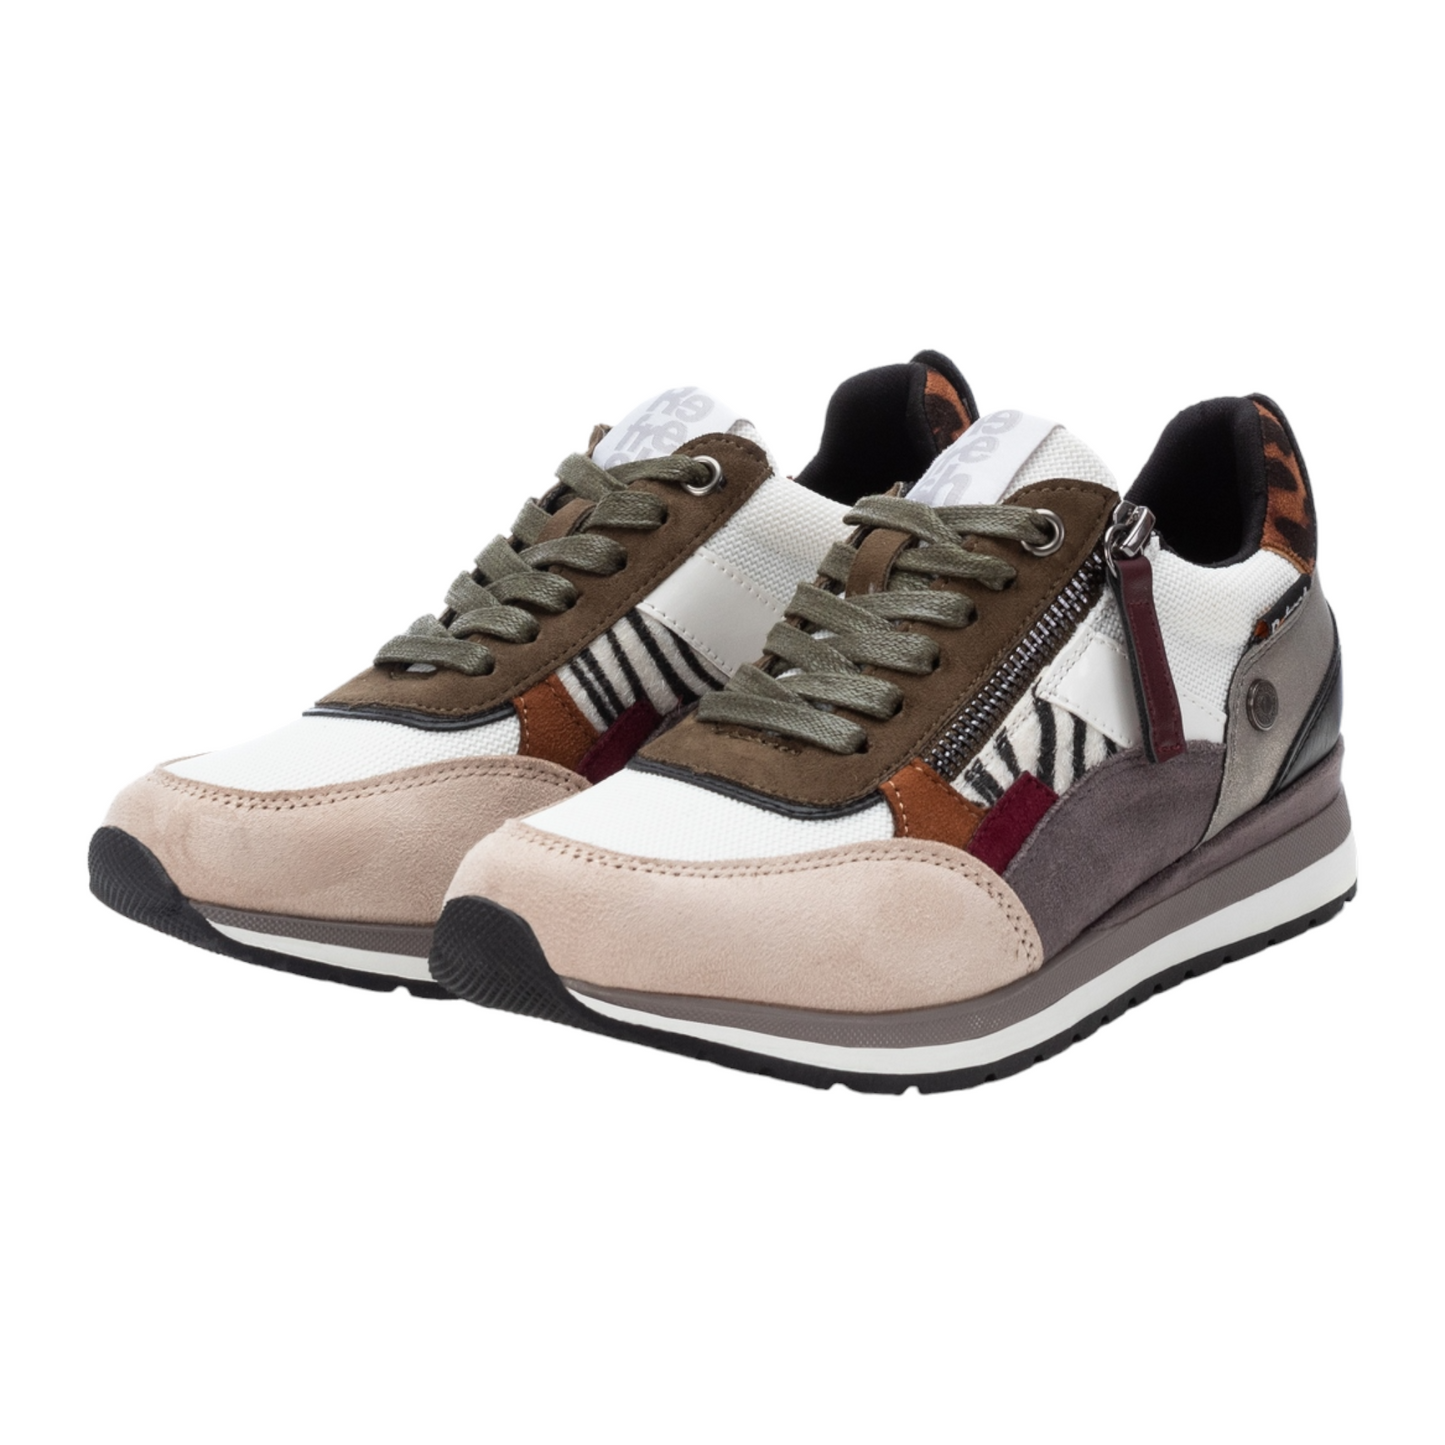 Zapatilla Sneakers Cordones Multicolor Refresh 17015903